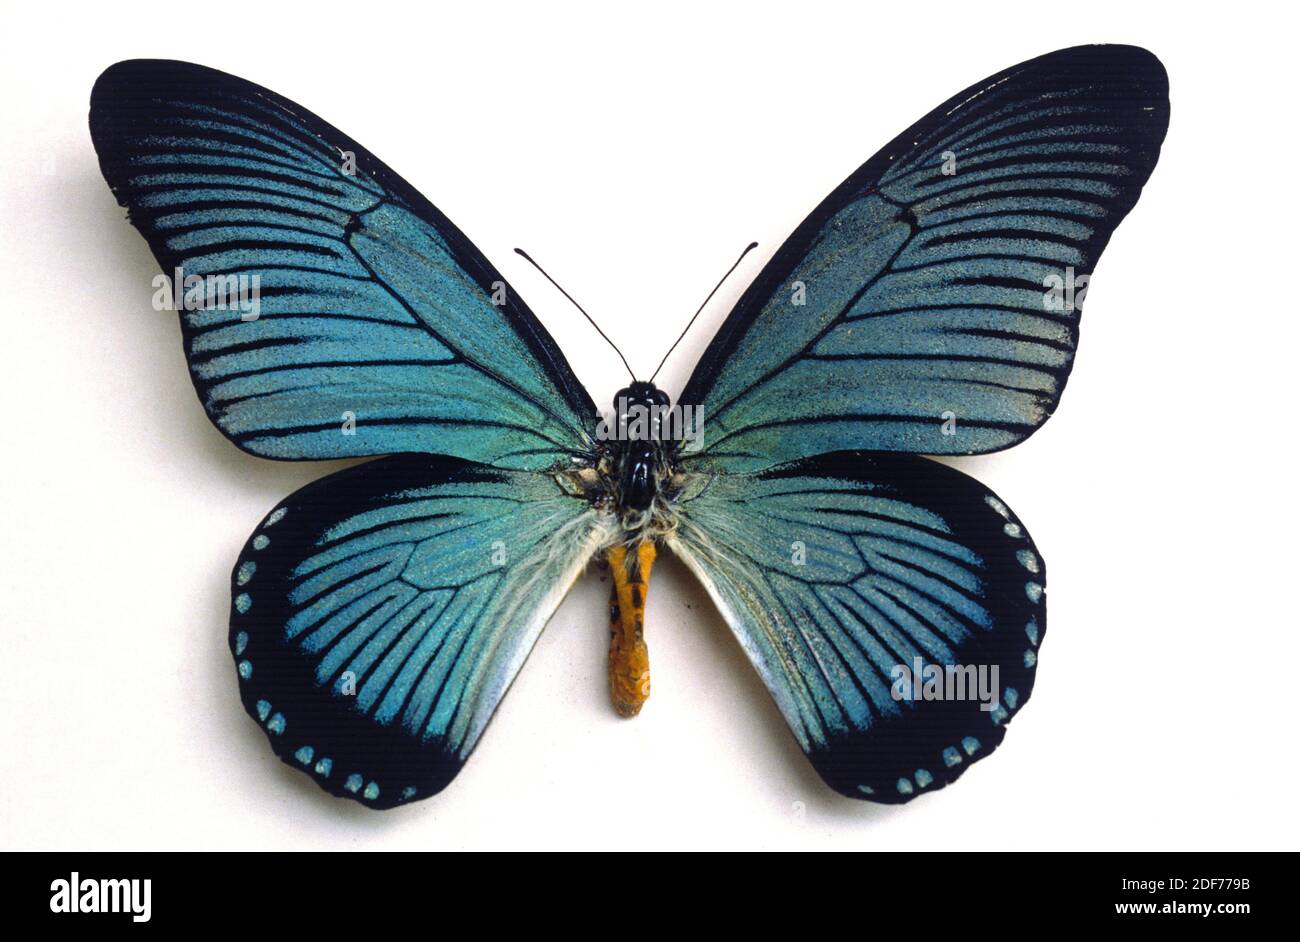 El colín azul gigante (Papilio zalmoxis) es una mariposa nativa de África central. Adulto, lado dorsal. Foto de stock